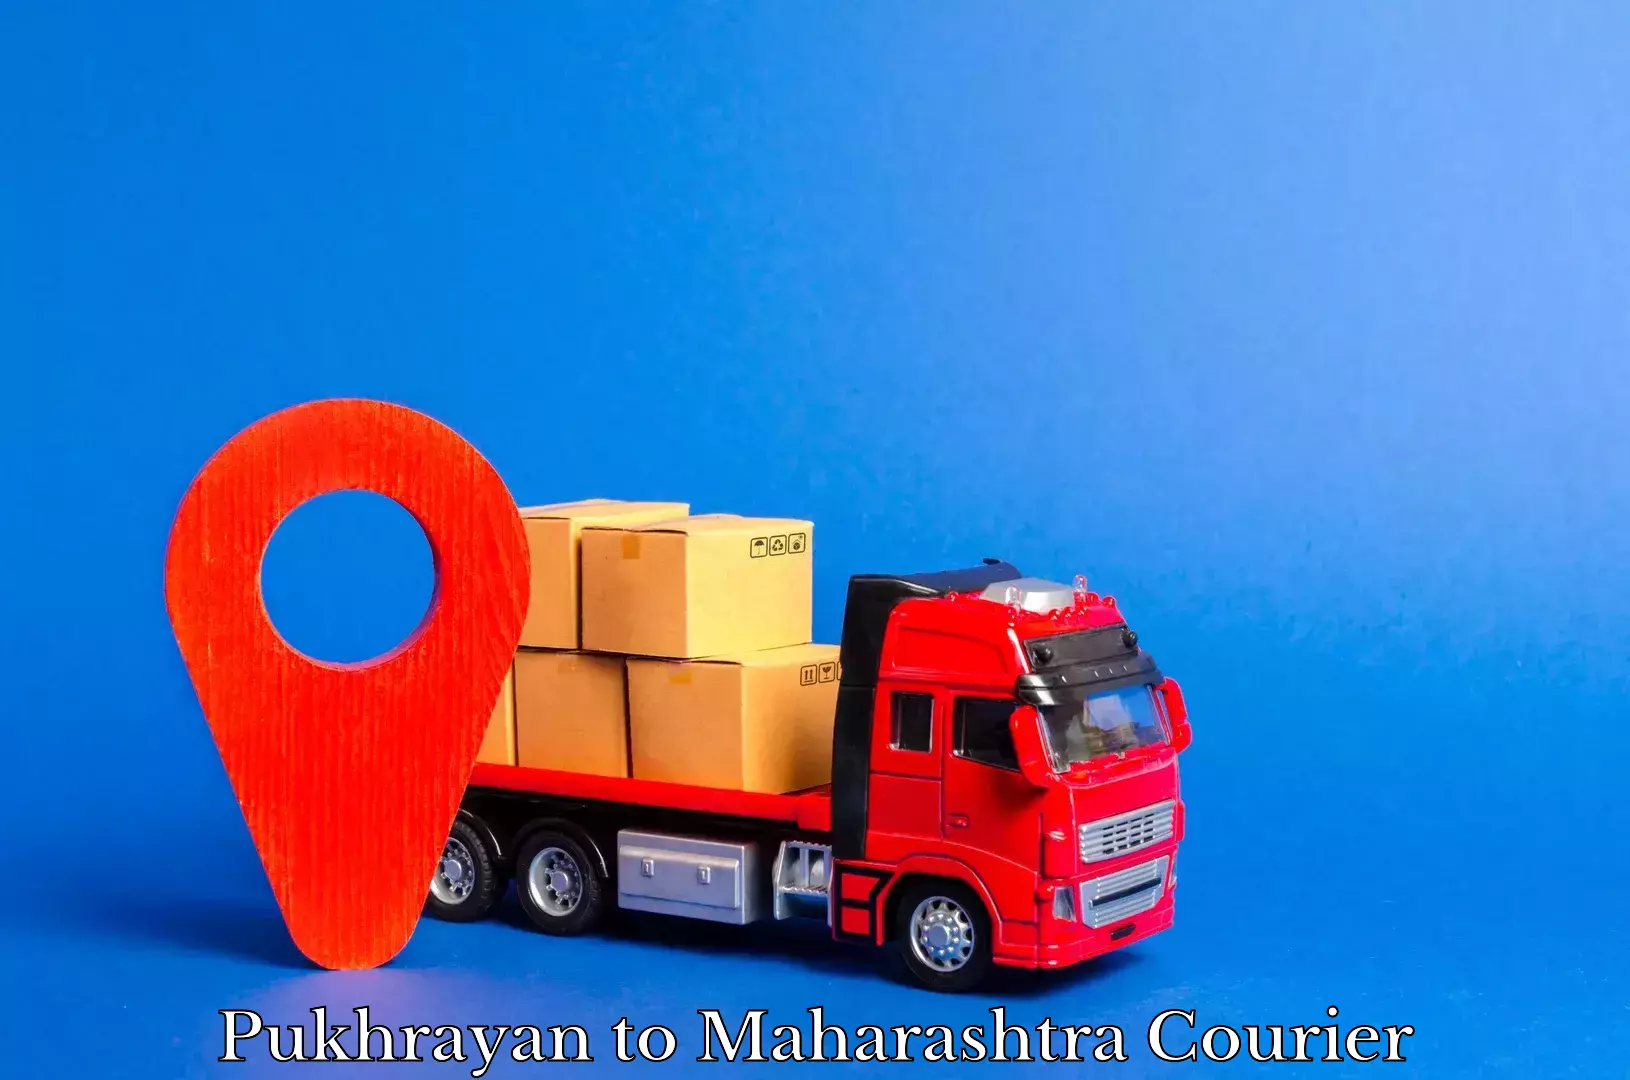 Urban courier service Pukhrayan to Maharashtra